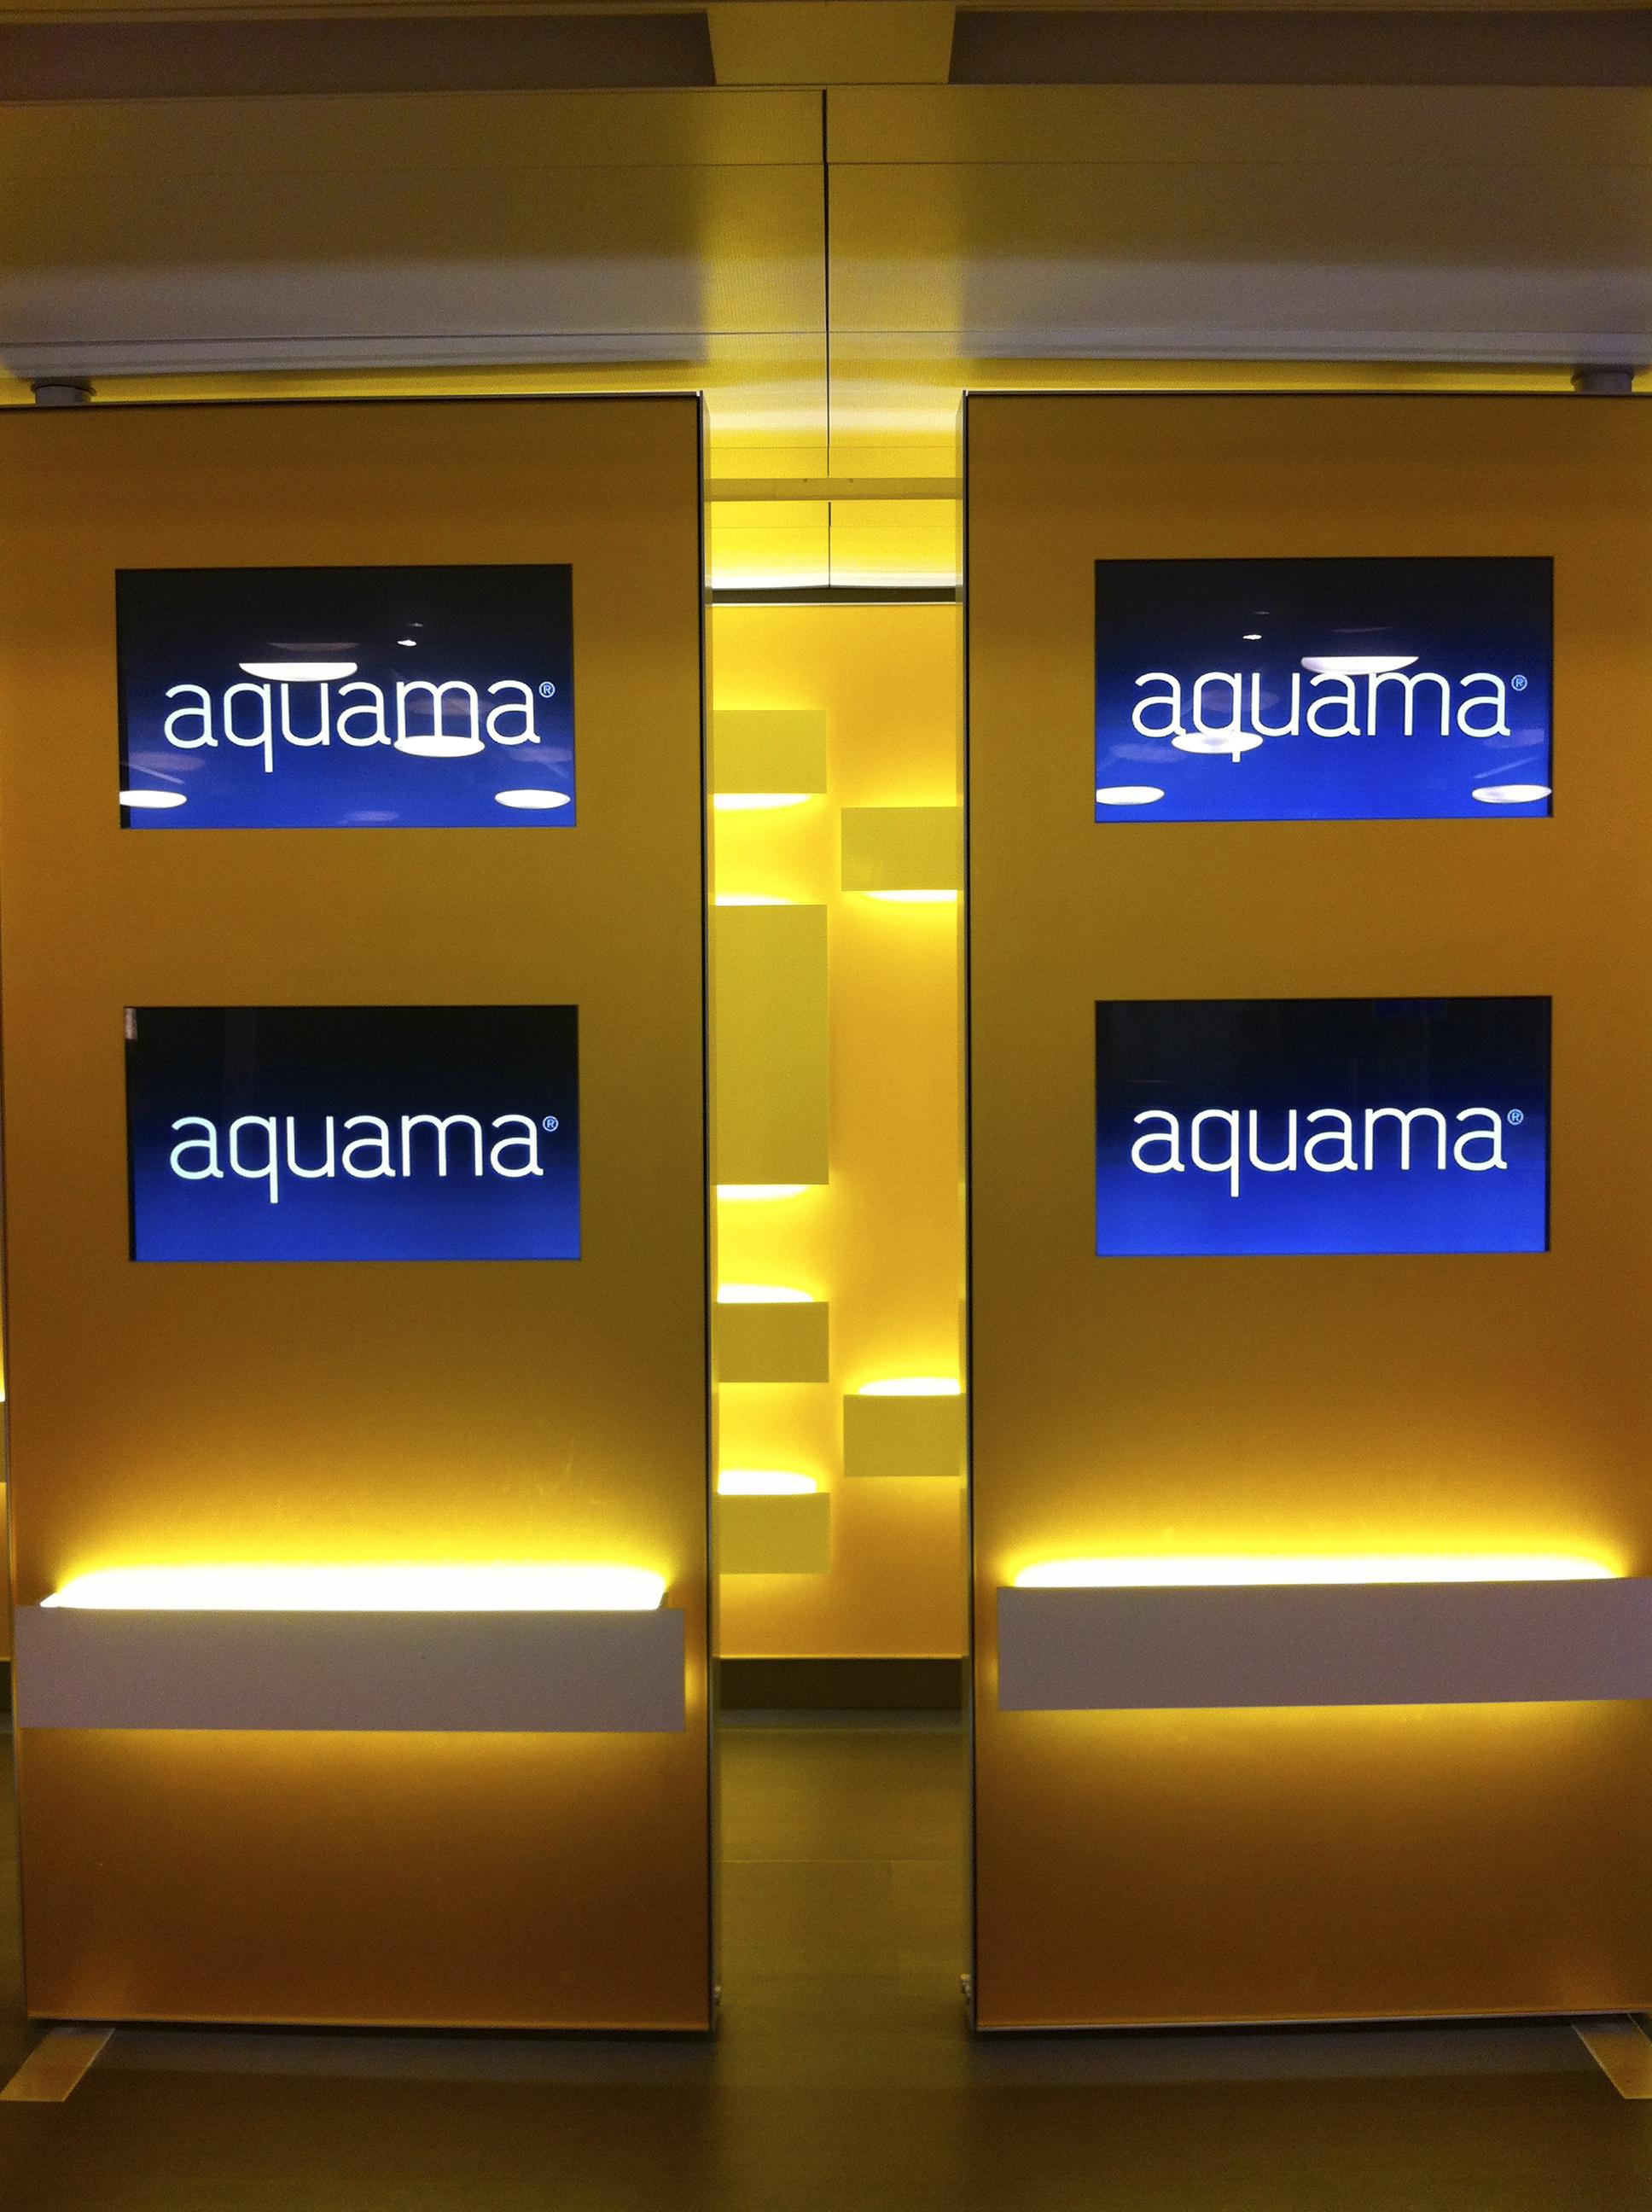 aquama displays on screen TV at airport